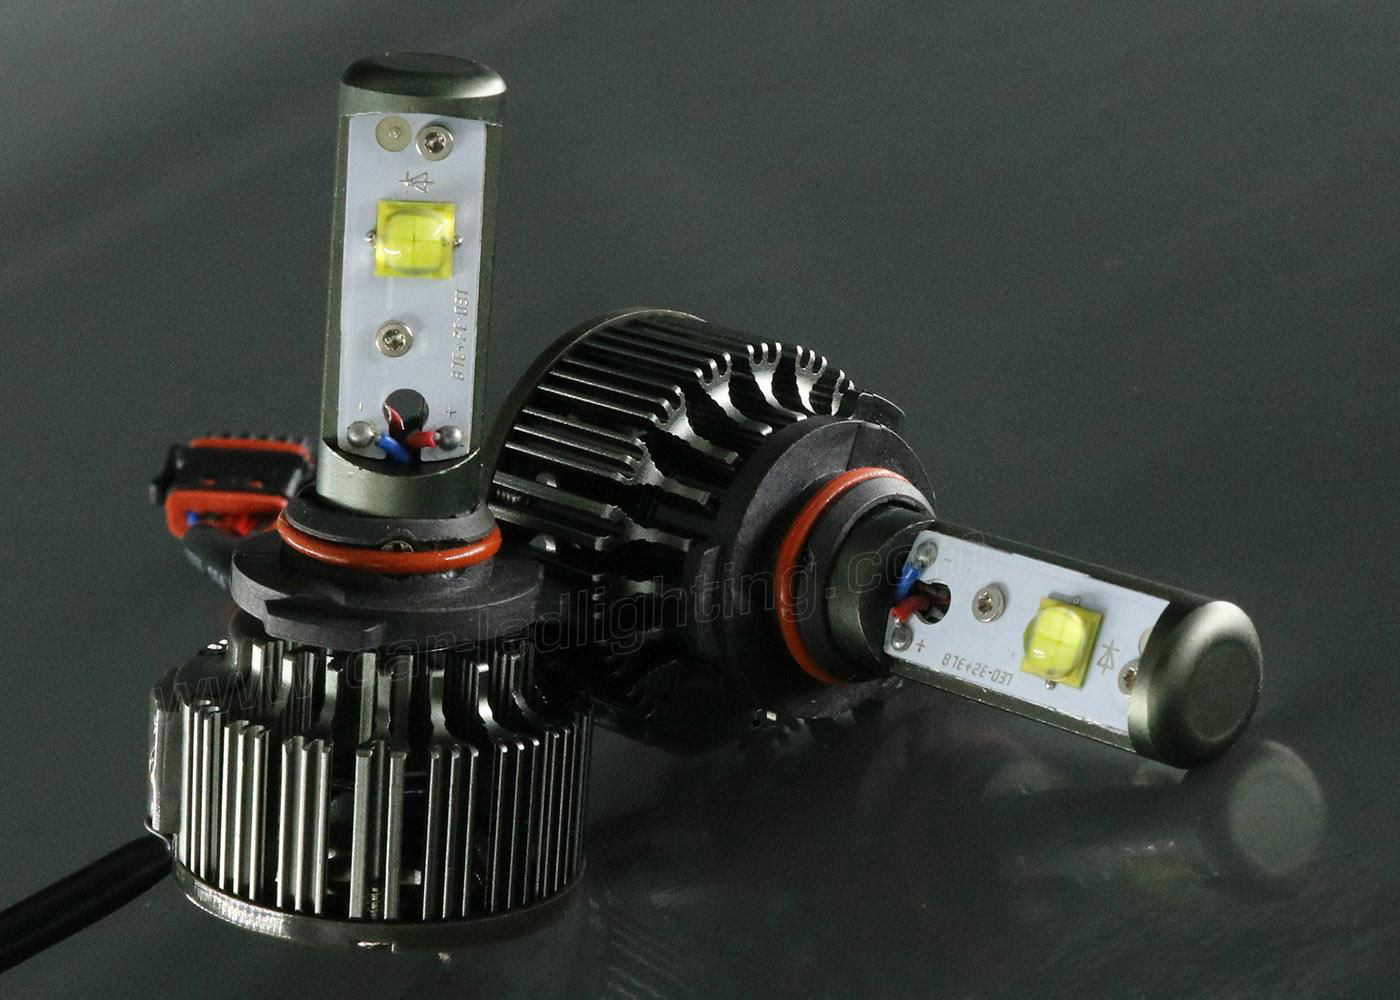 Super LED Lamp For Auto 9005 HB3 Car Headlight LED Conversion Kits Vehicle Light 3